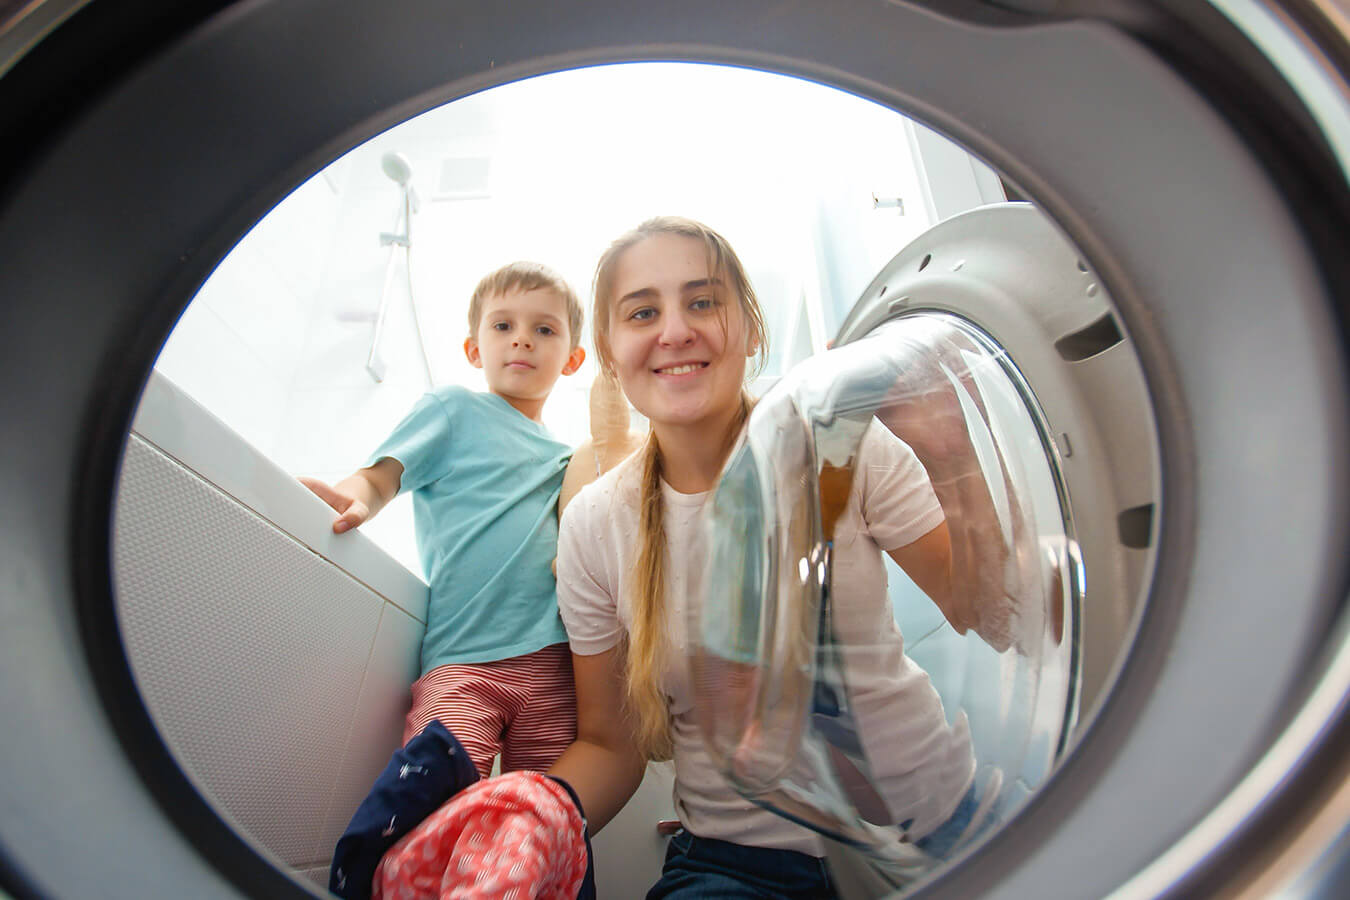 Czyszczenie pralki Domestosem – Czy można stosować Domestos do czyszczenia pralki?